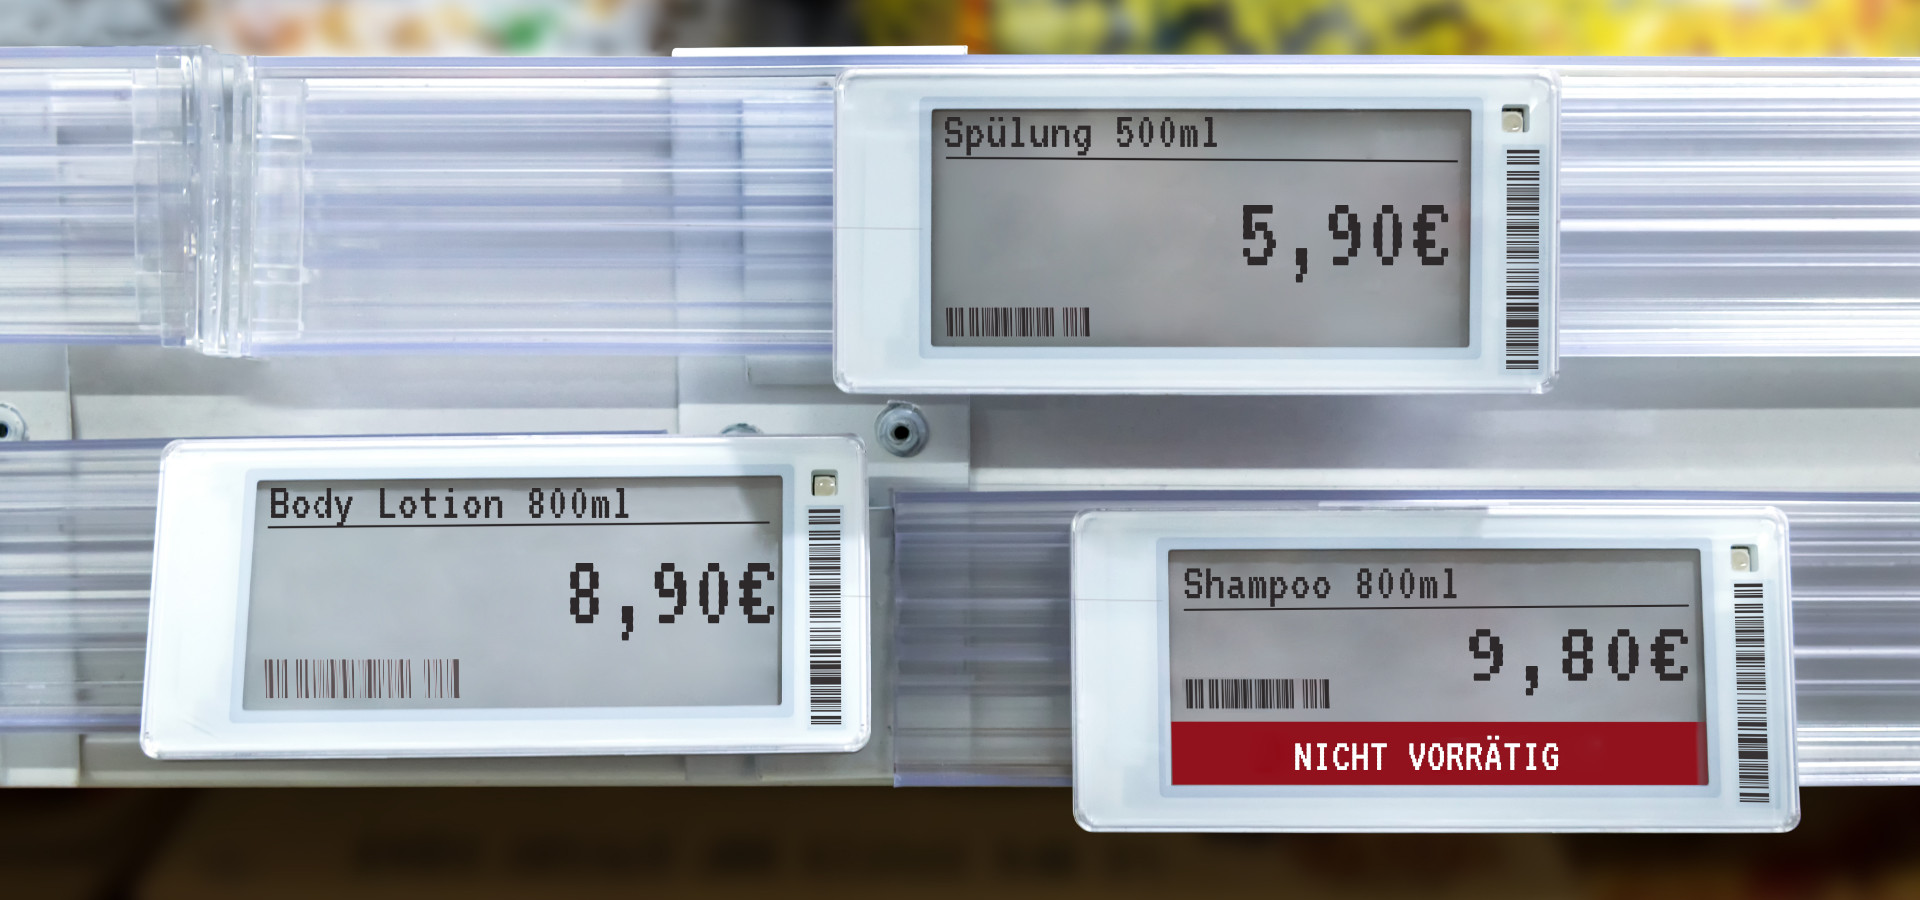 NFC-Displays mit verschiedenen Preisen im Einzelhandel